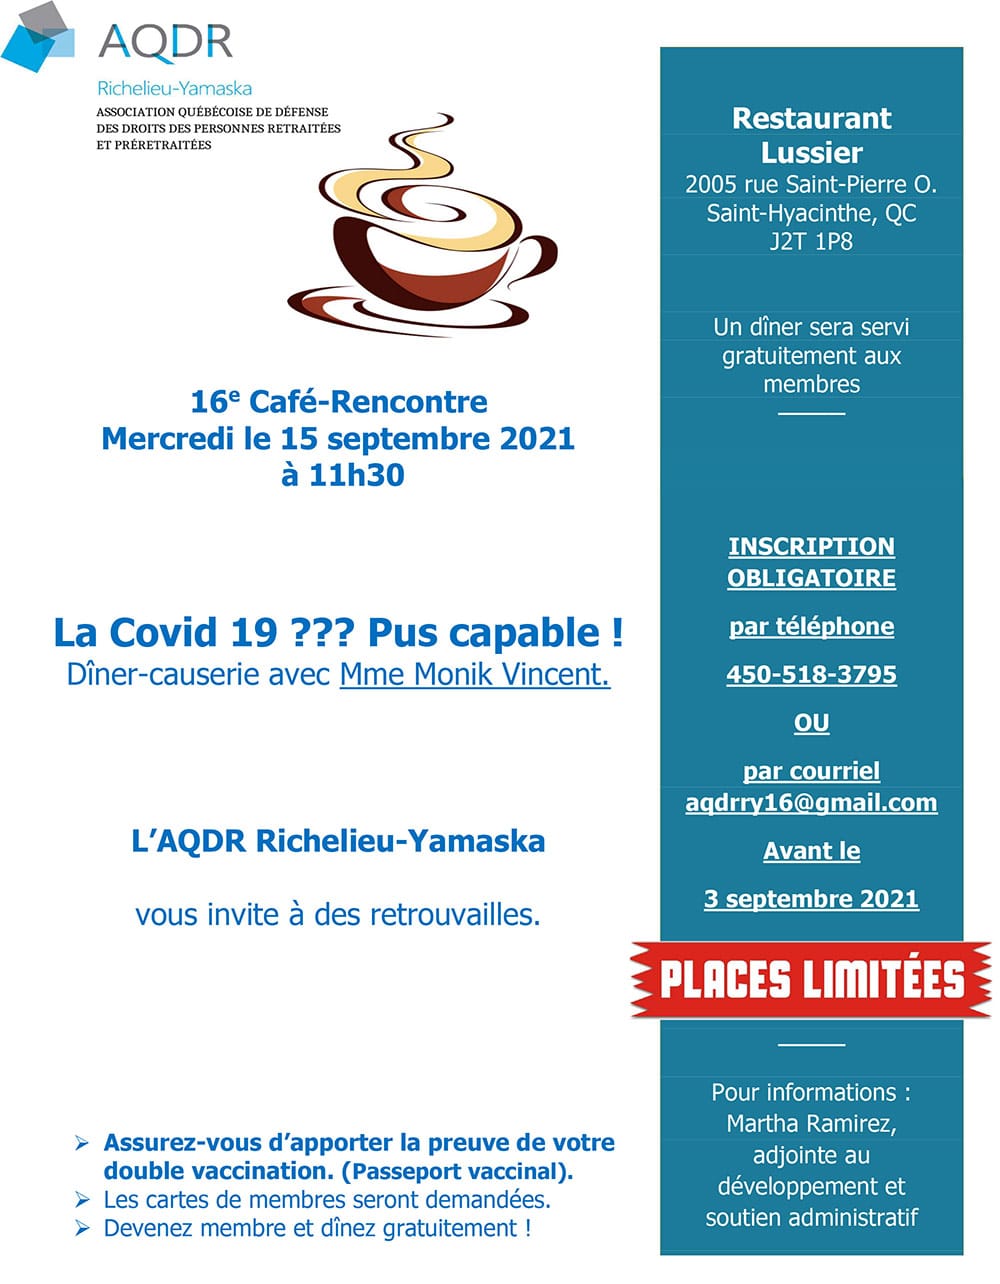 Café-Rencontre du15 septembre 2021 – AQDR Richelieu-Yamaska